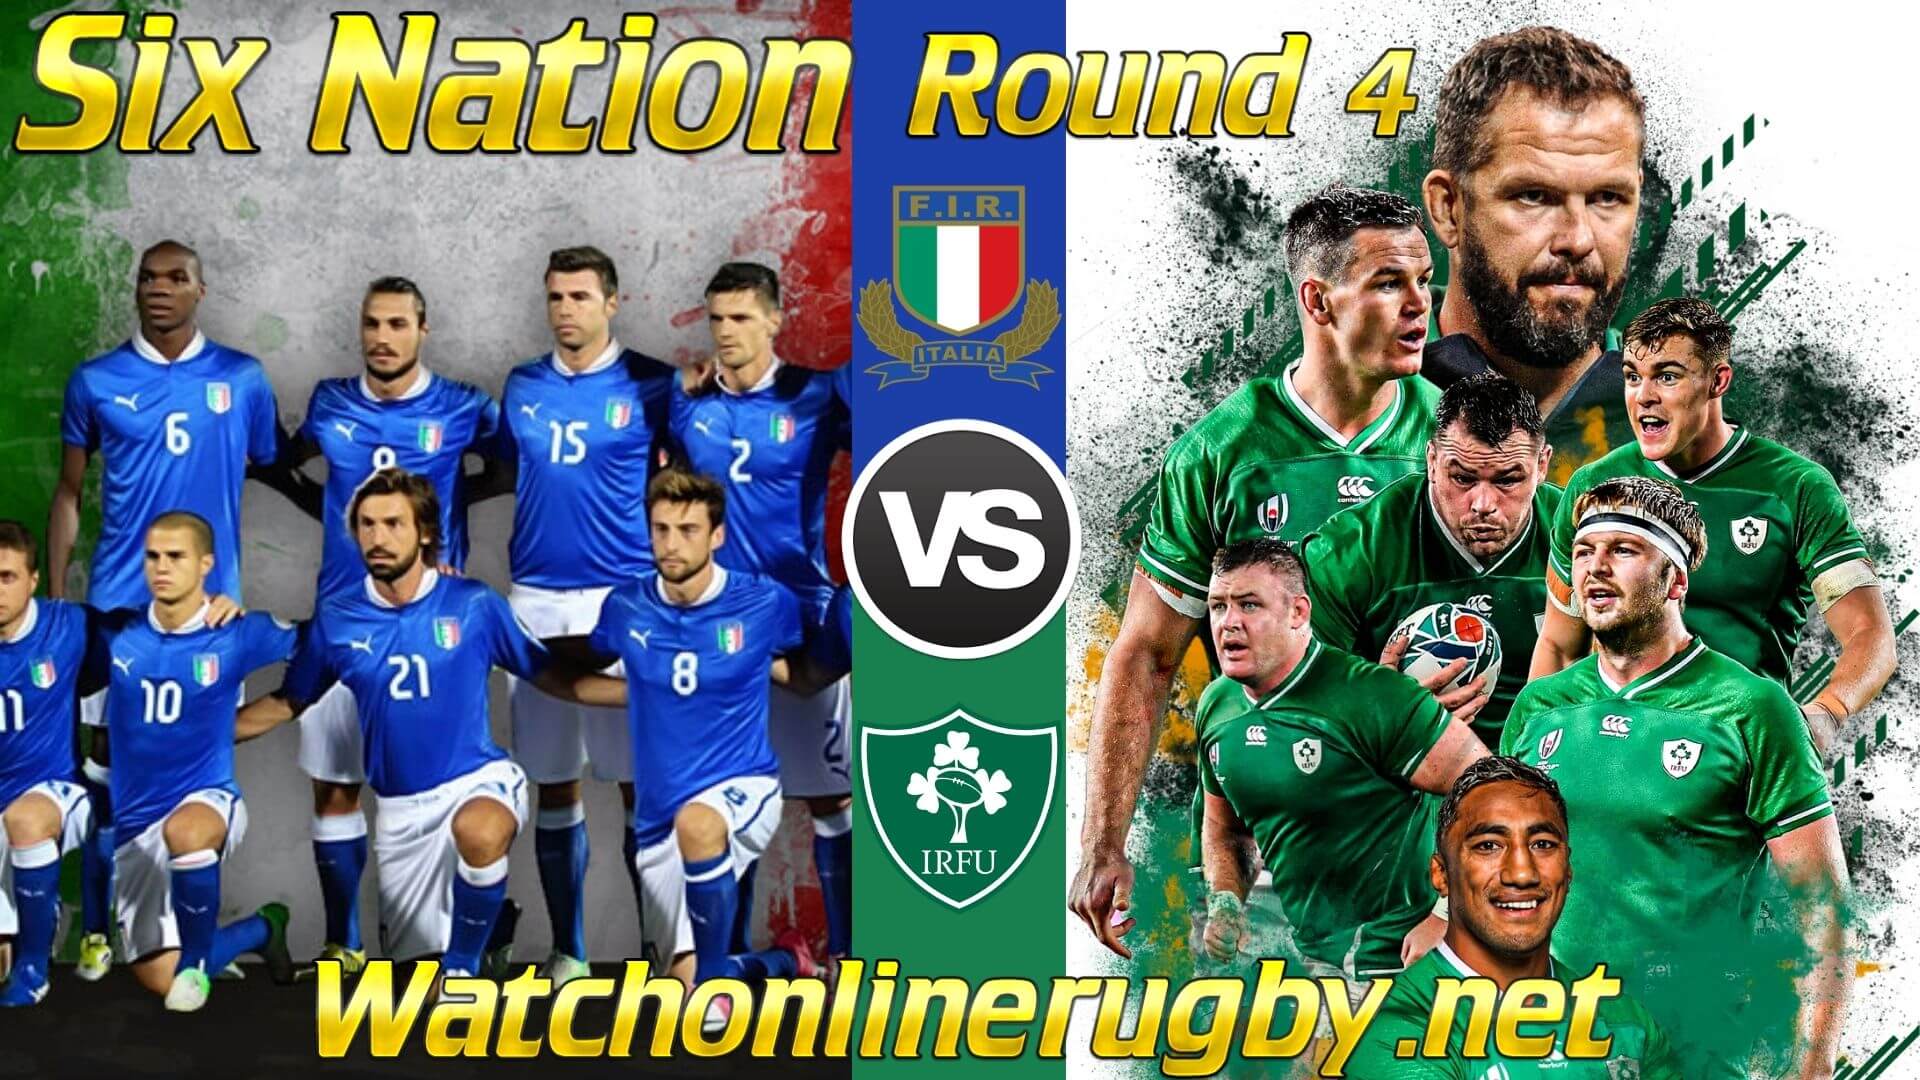 Italy vs Ireland Six Nation 2020 RD 4